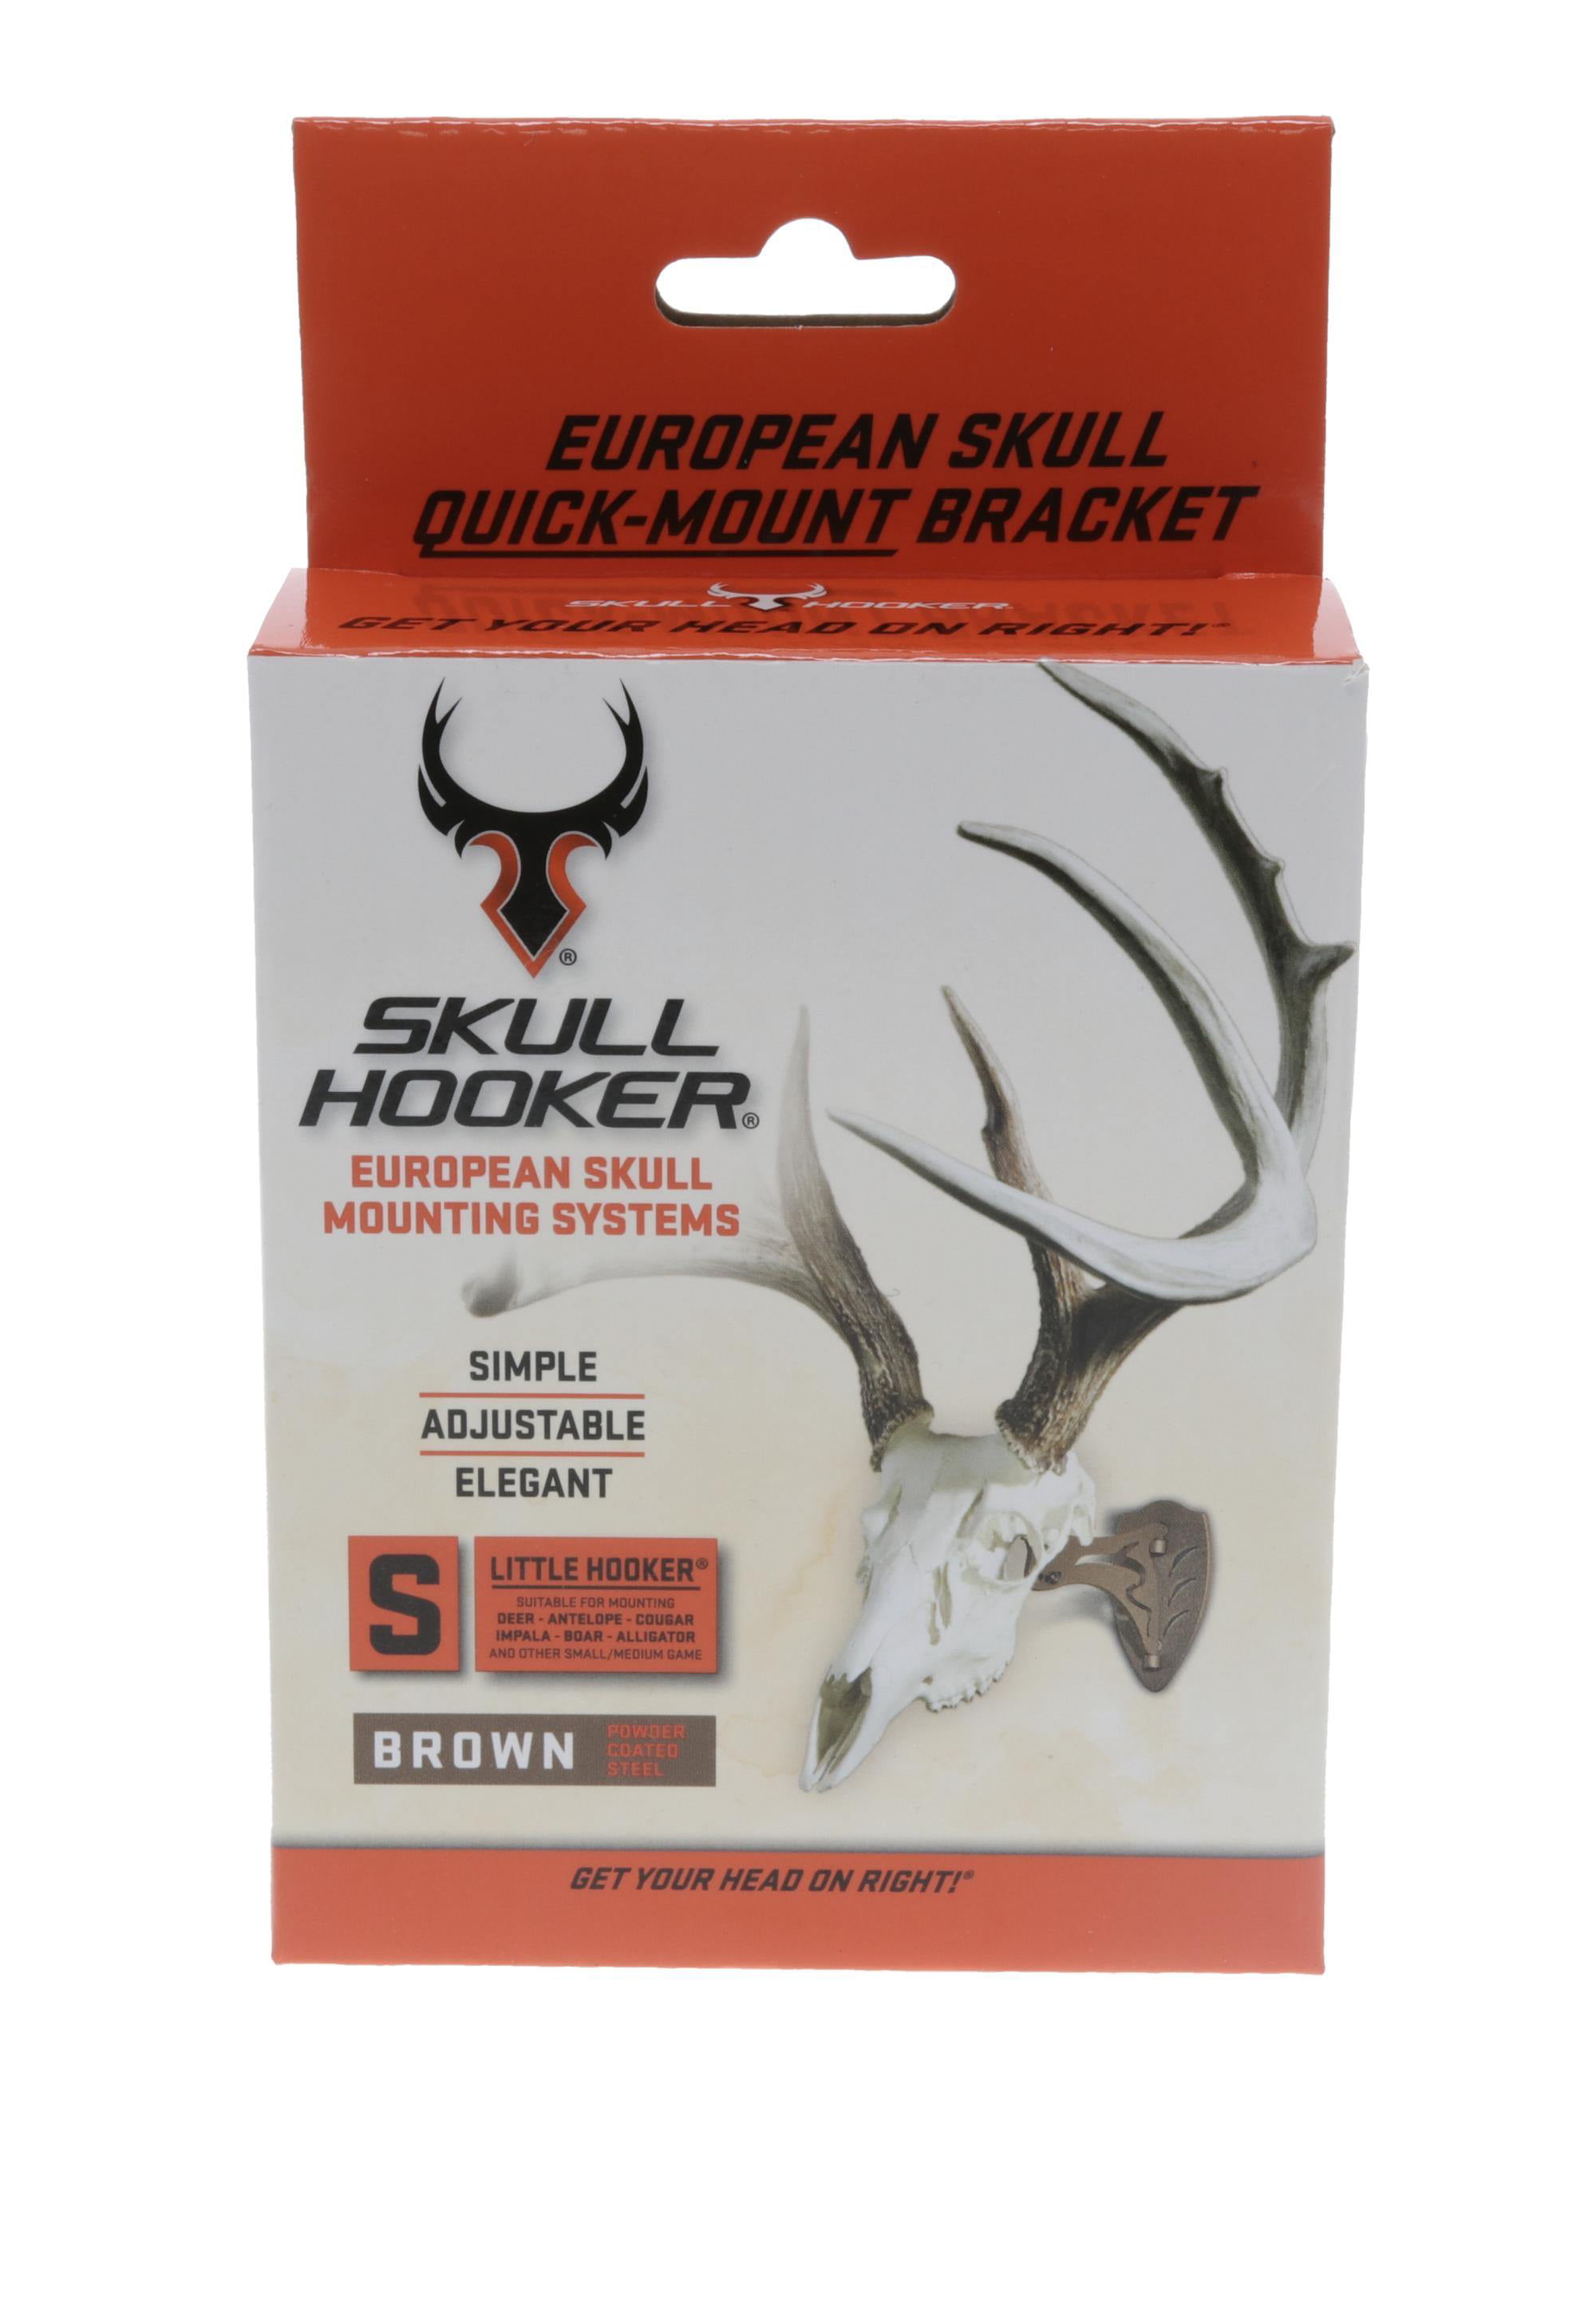 European Skull Mount Bracket fits Deer Bear Antelope Wild Boar 